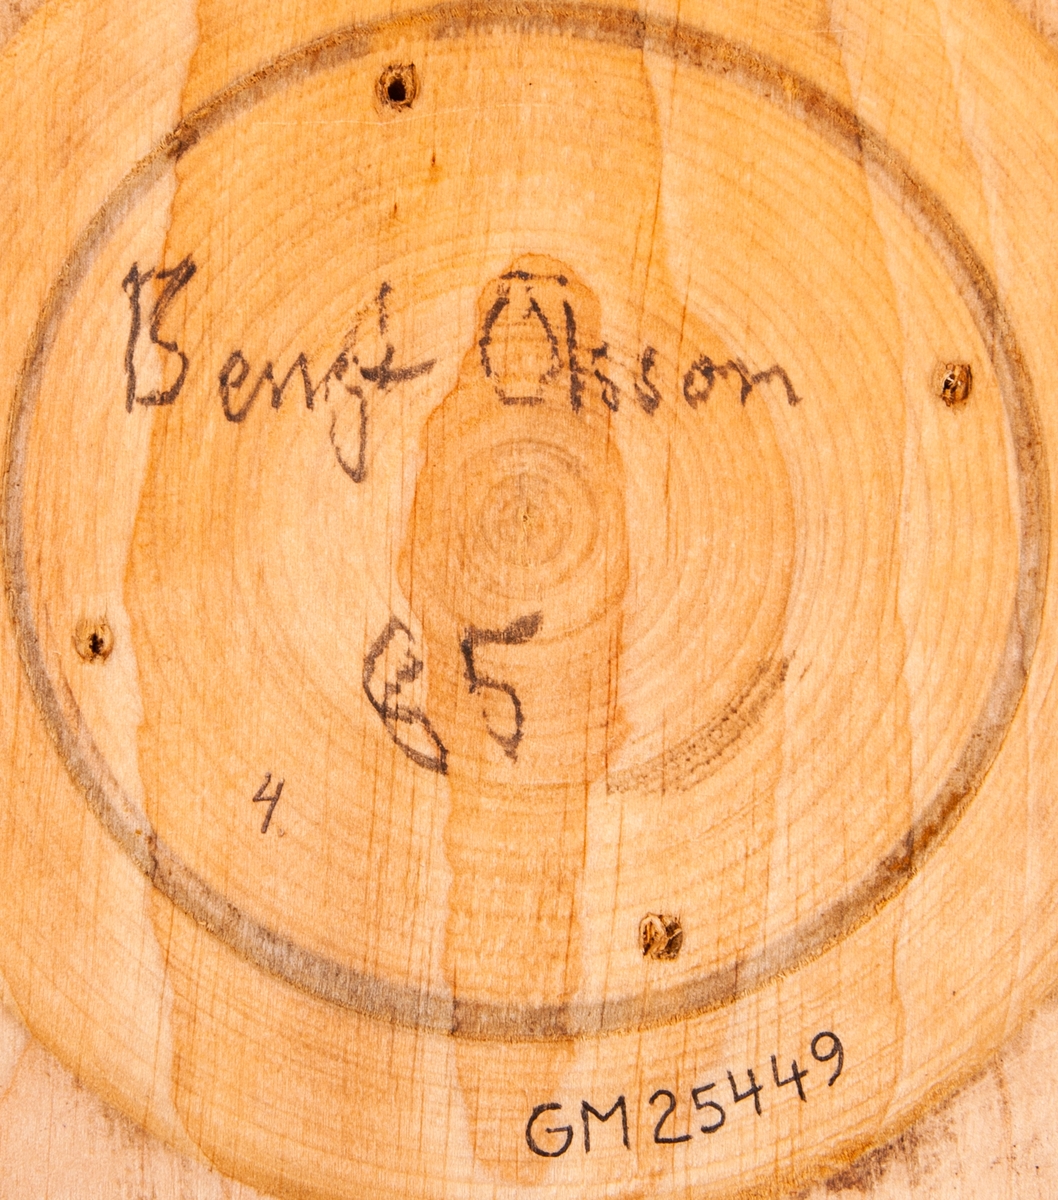 Träskål, svarvad, med mjukt rundade sidor, något ojämn i höjd och rundning. Ev oljad. Signerad med blyerts i botten: "Bengt Olsson 85".